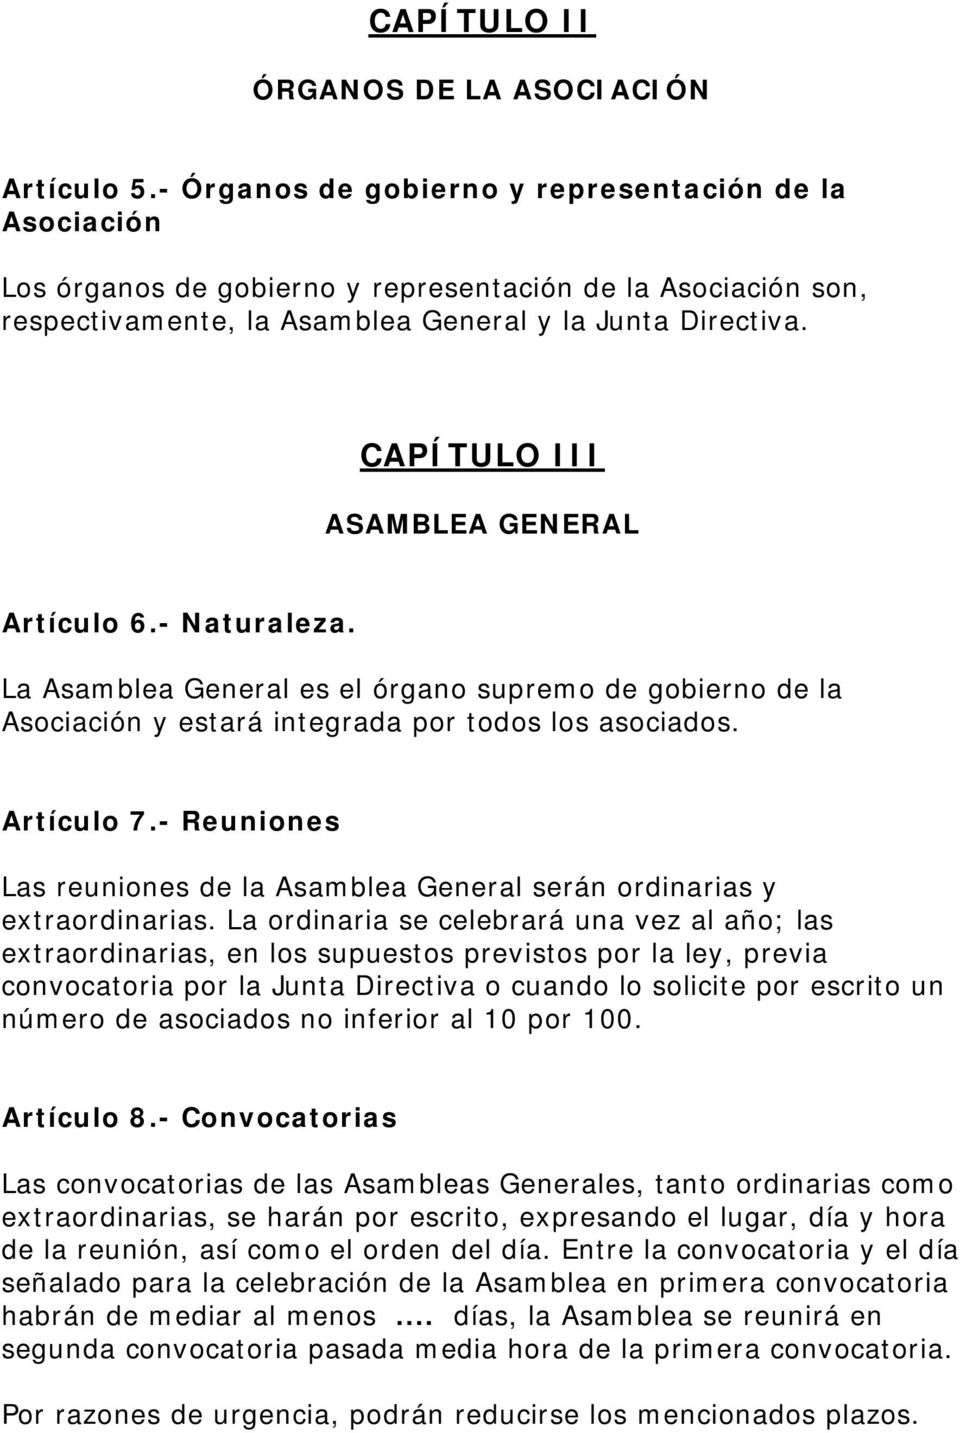 CAPÍTULO III ASAMBLEA GENERAL Artículo 6.- Naturaleza. La Asamblea General es el órgano supremo de gobierno de la Asociación y estará integrada por todos los asociados. Artículo 7.